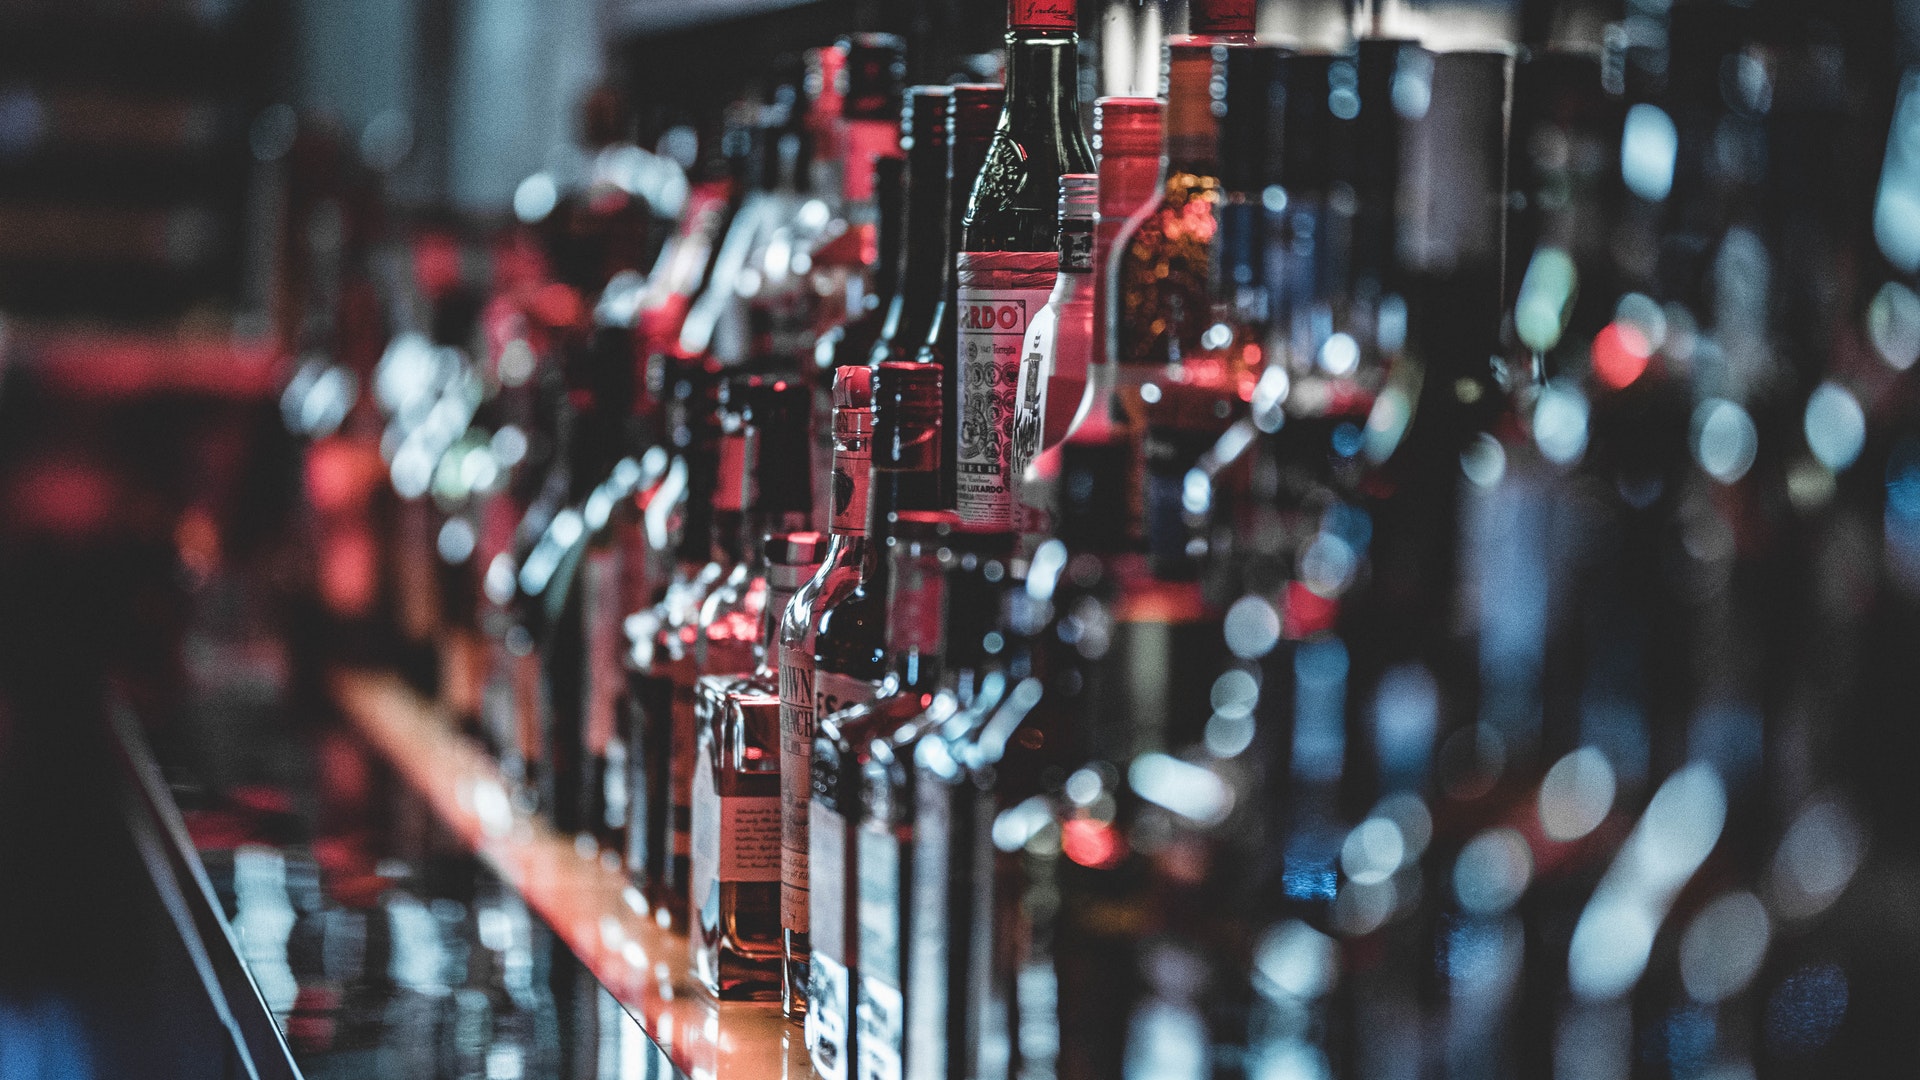 Депутаты предложили запретить продавать алкоголь в супермаркетах